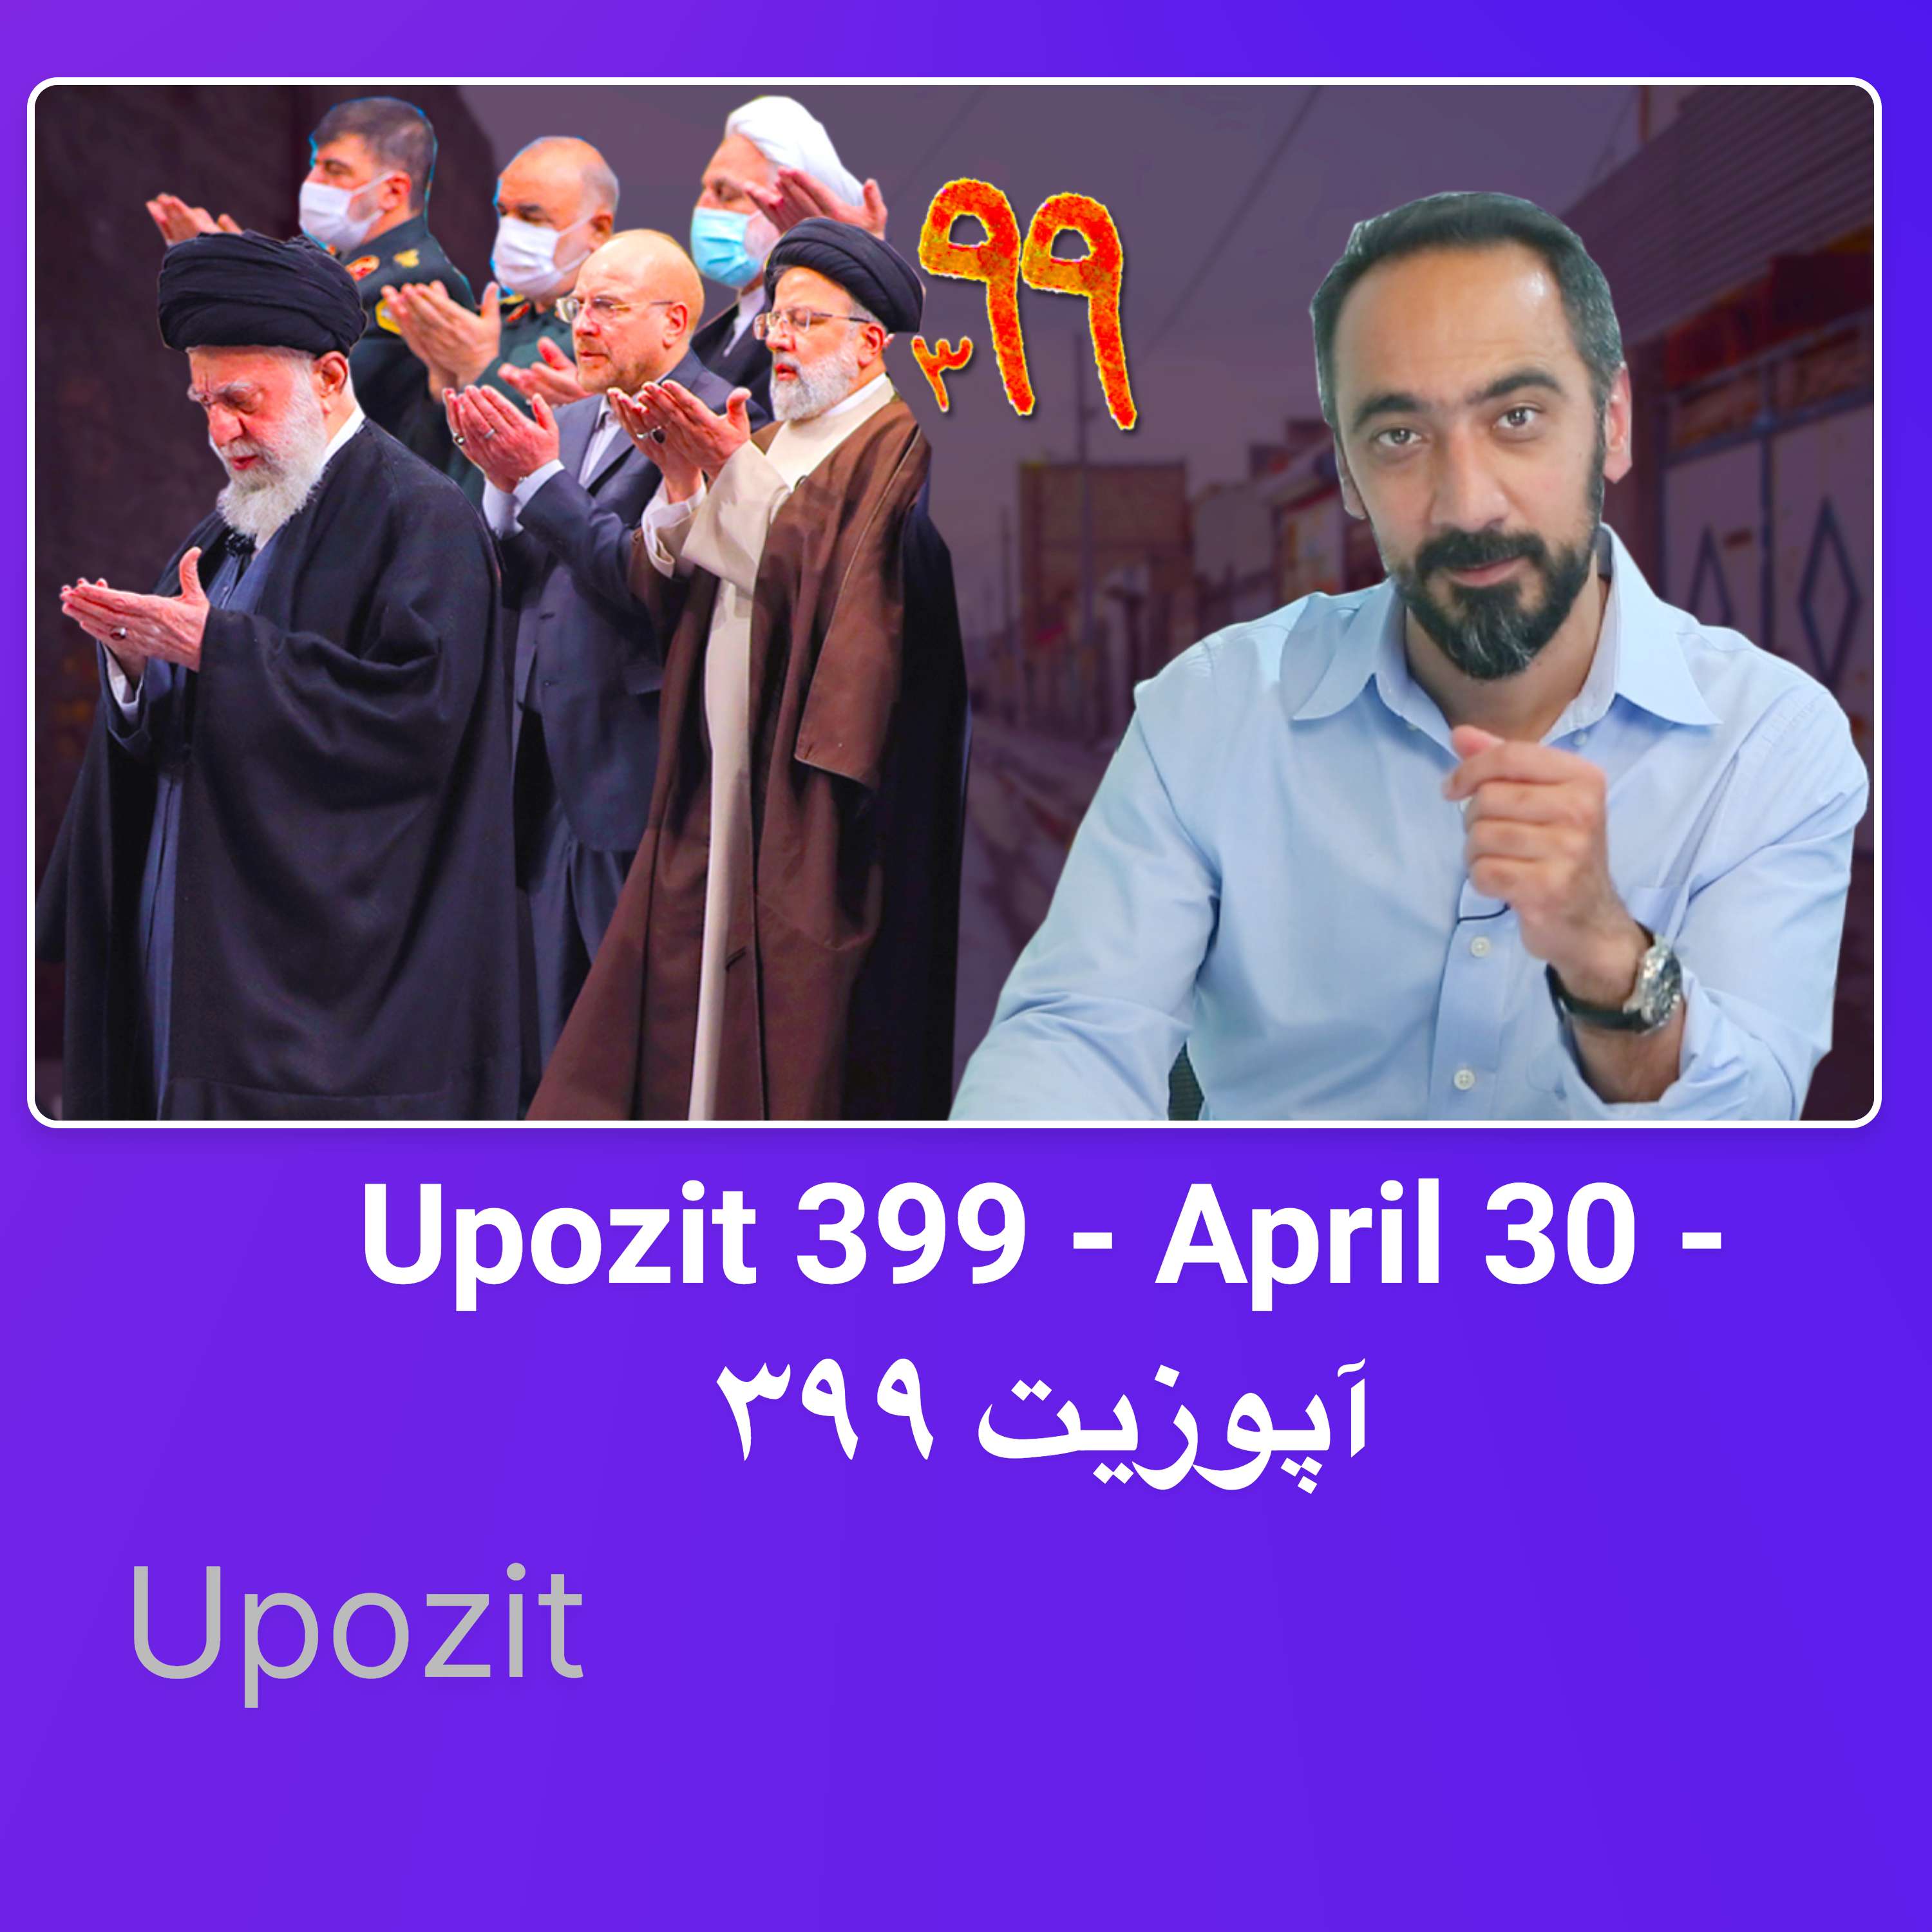 Upozit 399 - April 30 - آپوزیت ۳۹۹